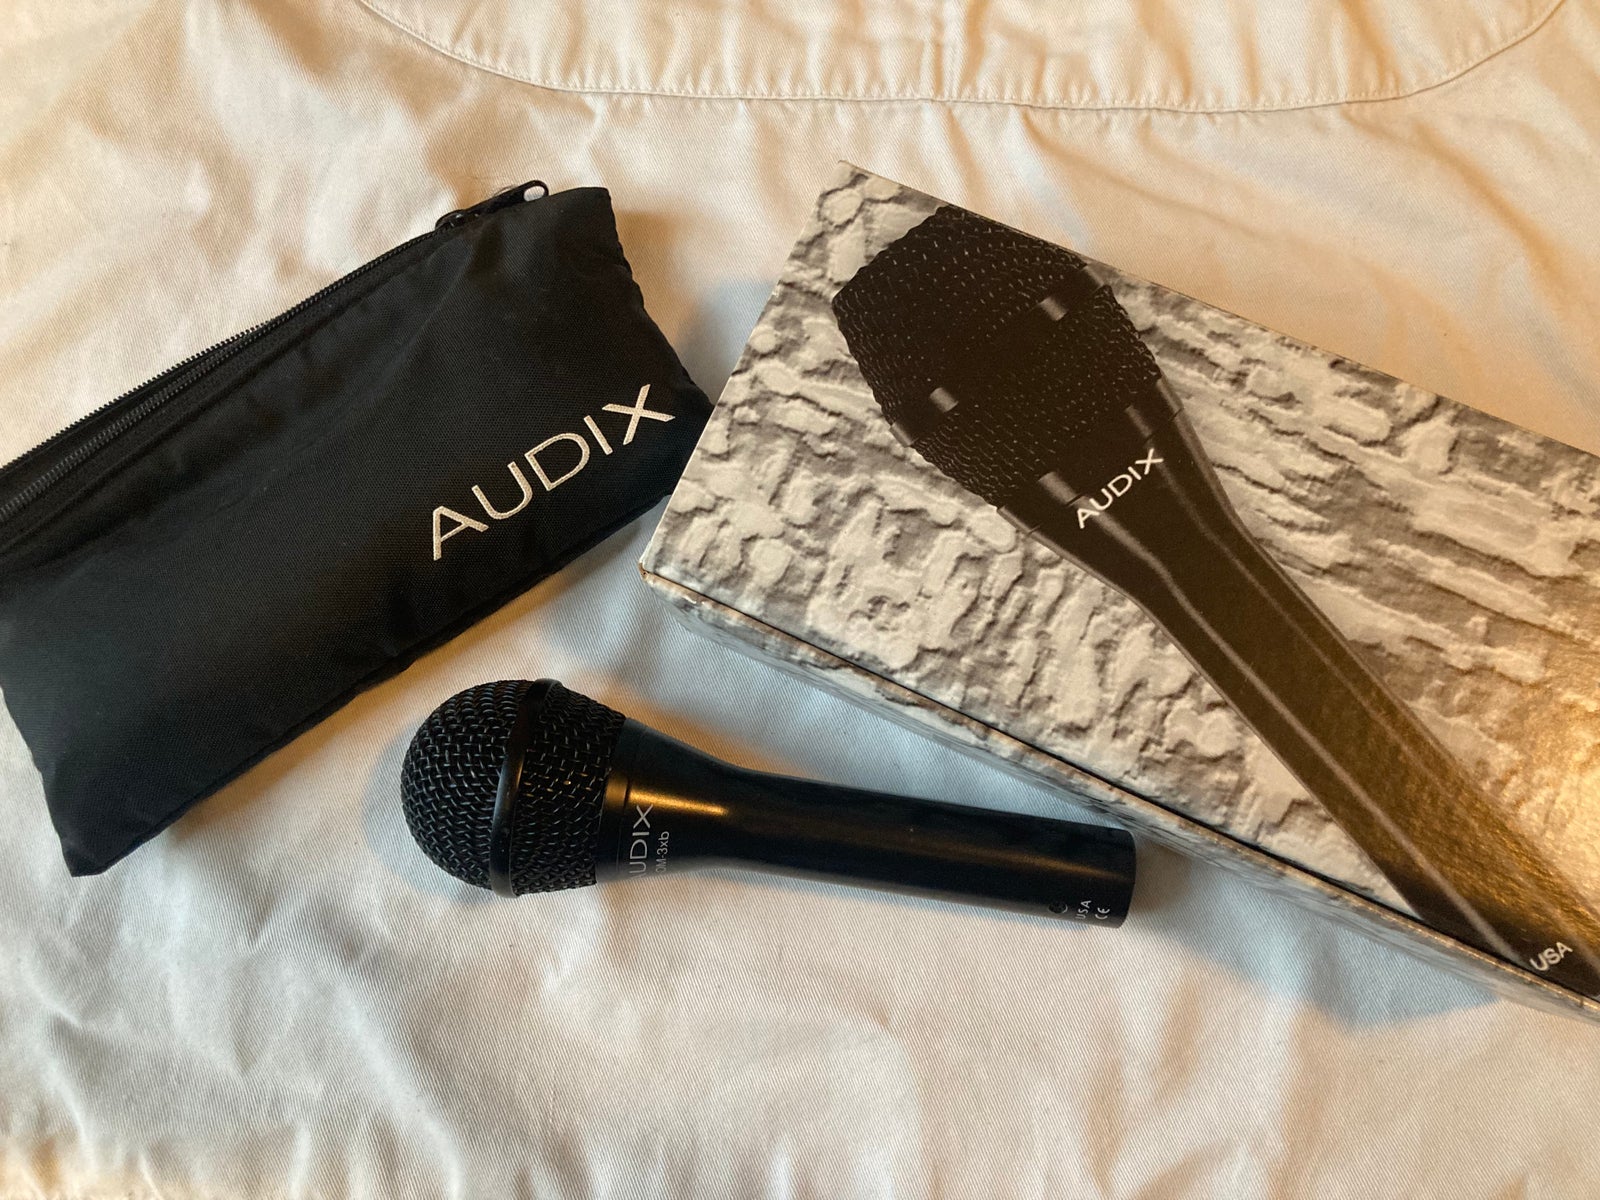 Mikrofon, Audix OM-3xb